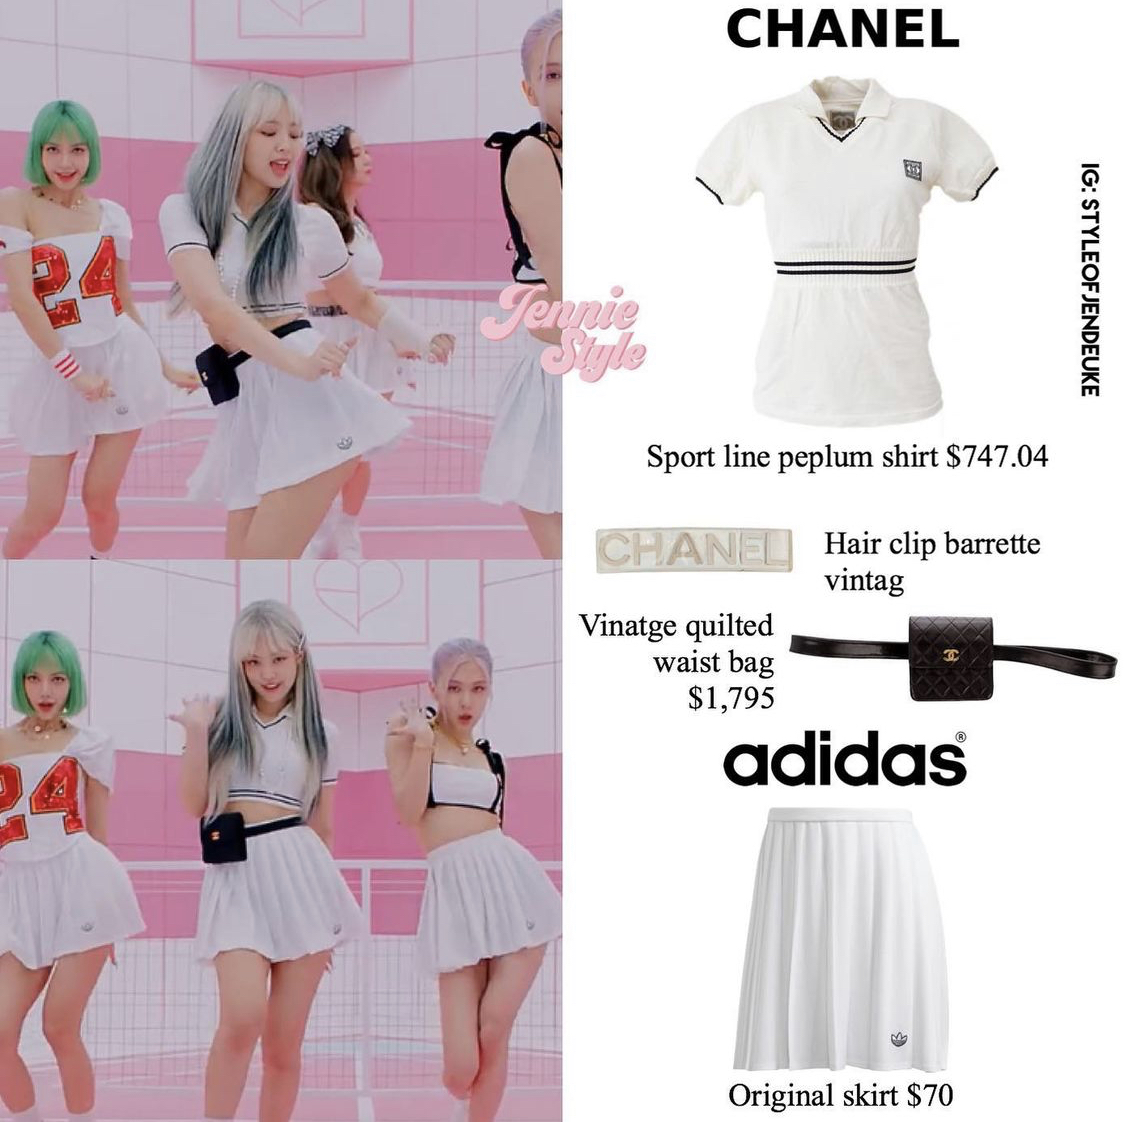 Trong MV Ice Cream, Jennie diện áo polo croptop và chân váy tennis trắng toát lên sự năng động và nữ tính. Dưới bàn tay của đội ngũ stylist, chiếc áo phông Chanel trông xịn xò hơn hẳn bản gốc.